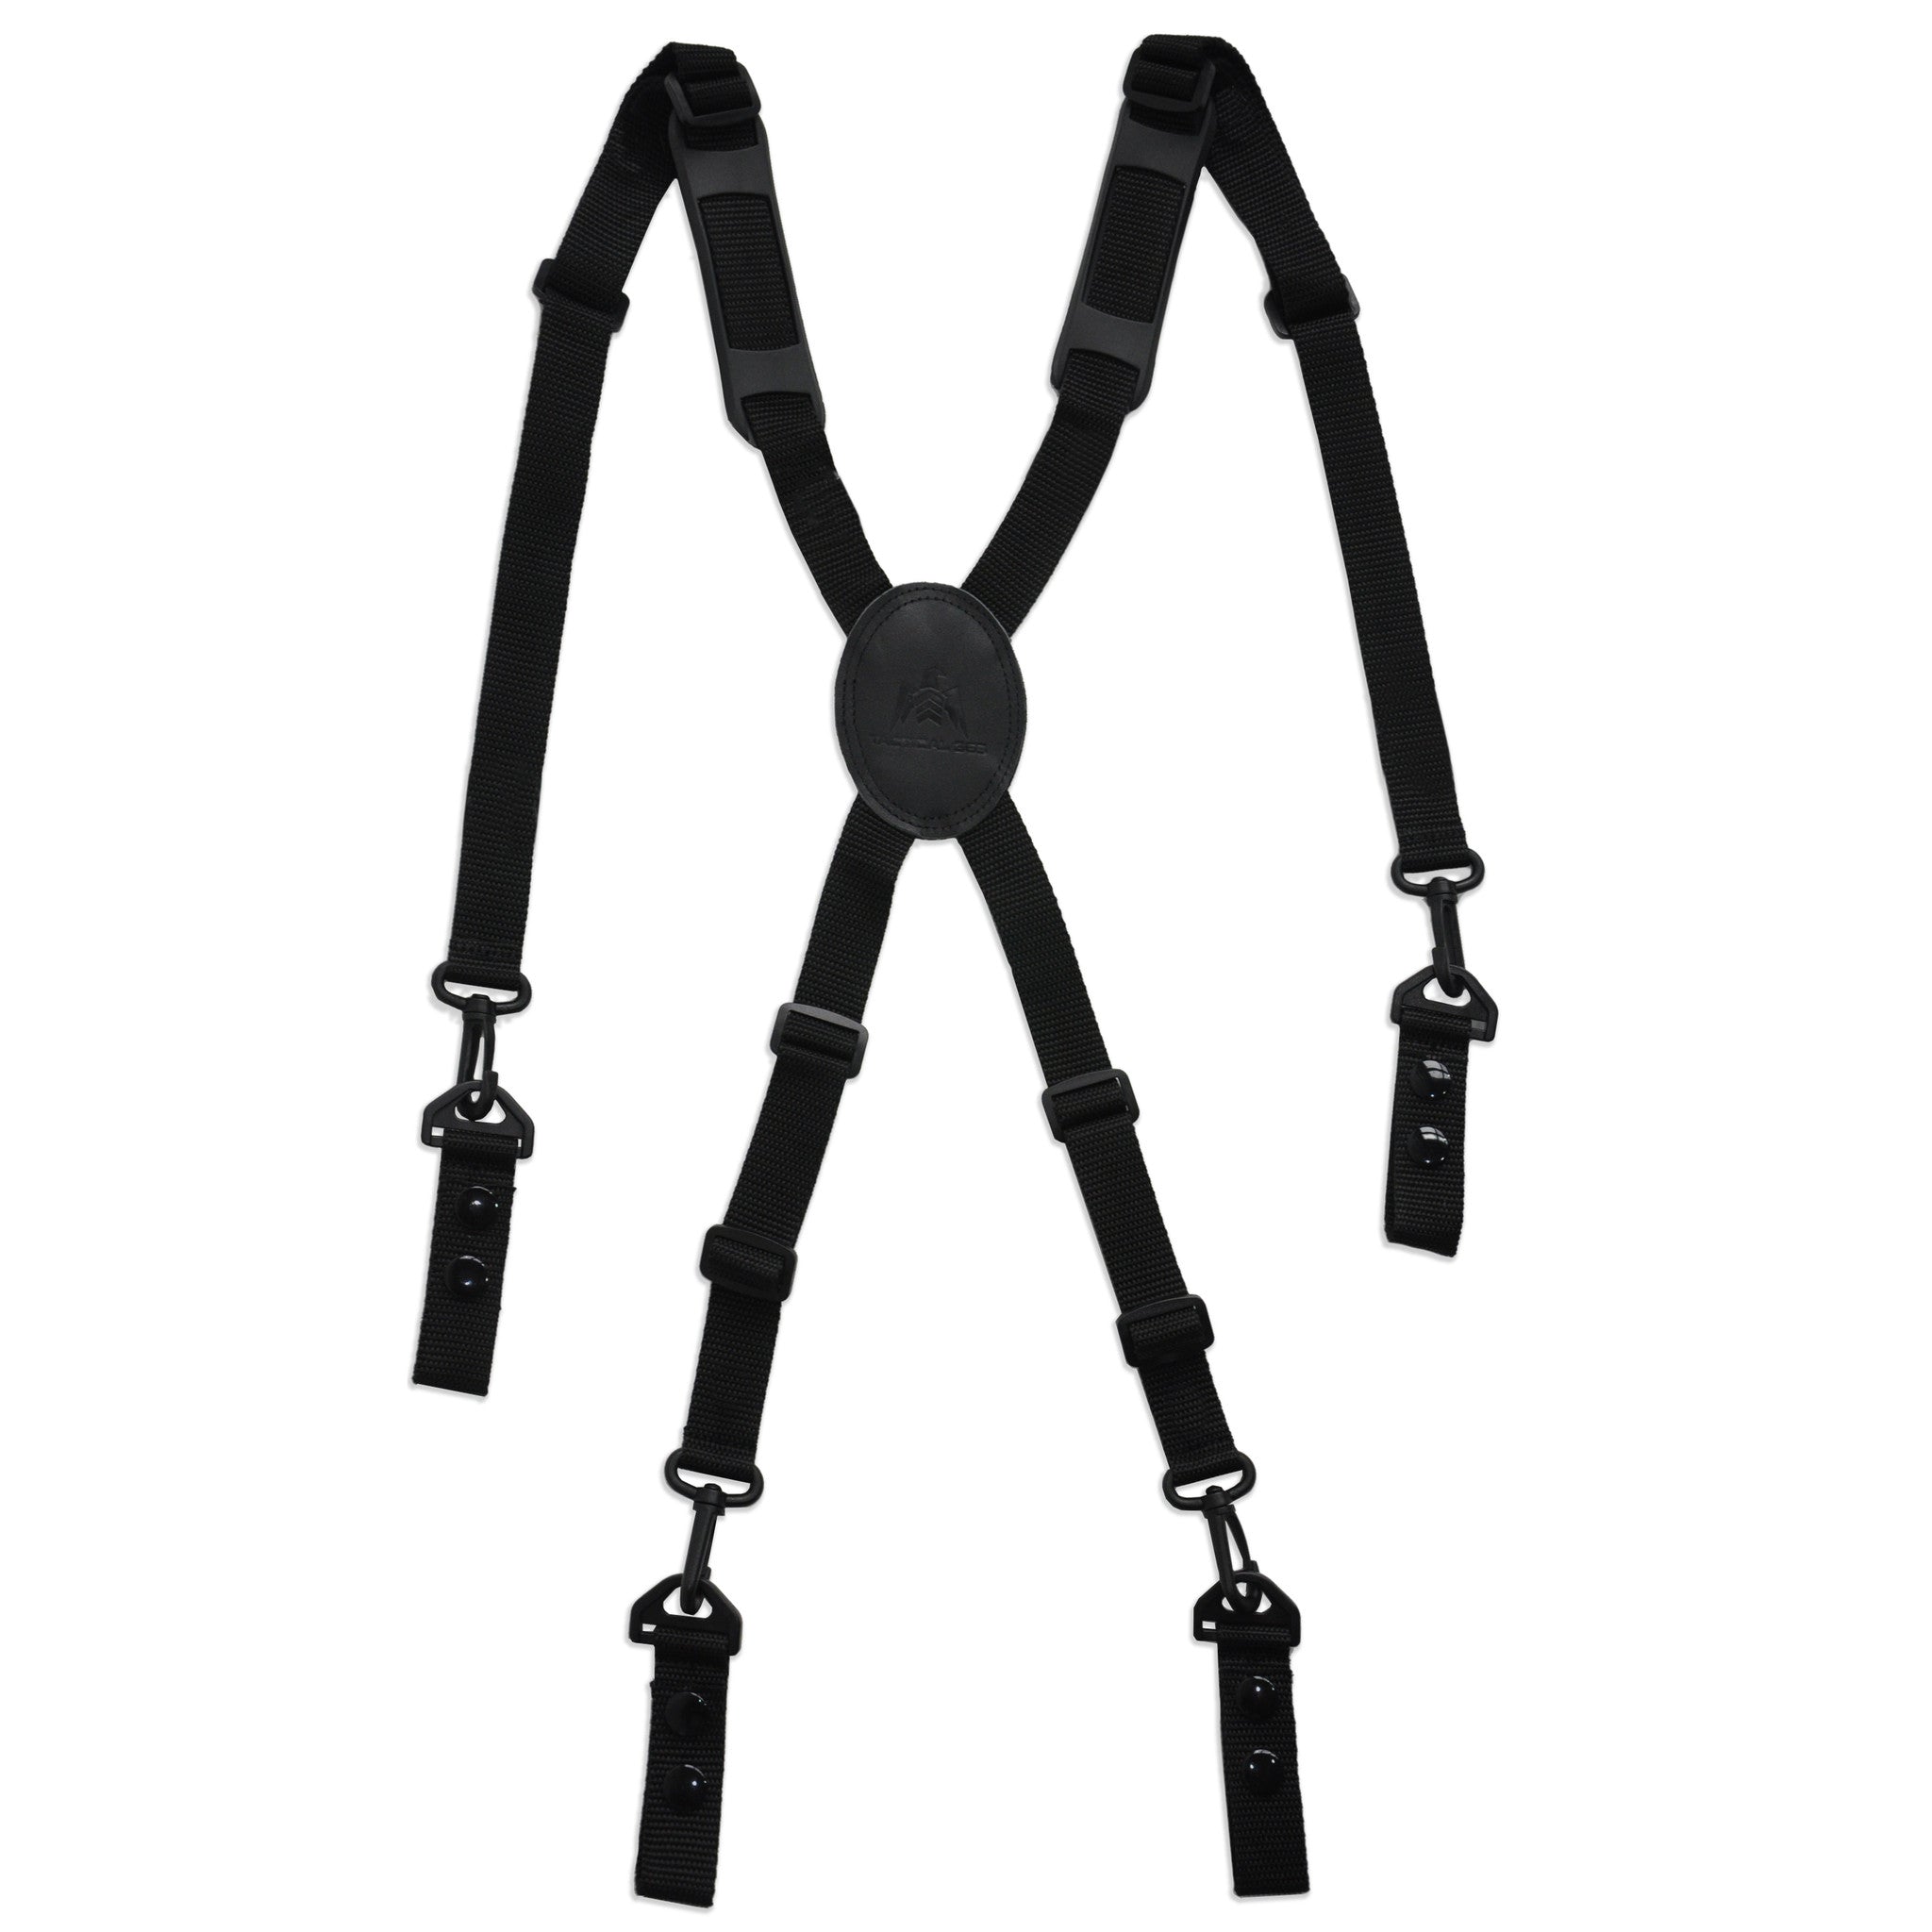 https://www.tactical365.com/cdn/shop/products/tactical_suspenders_2w_1024x1024@2x.jpg?v=1484926423